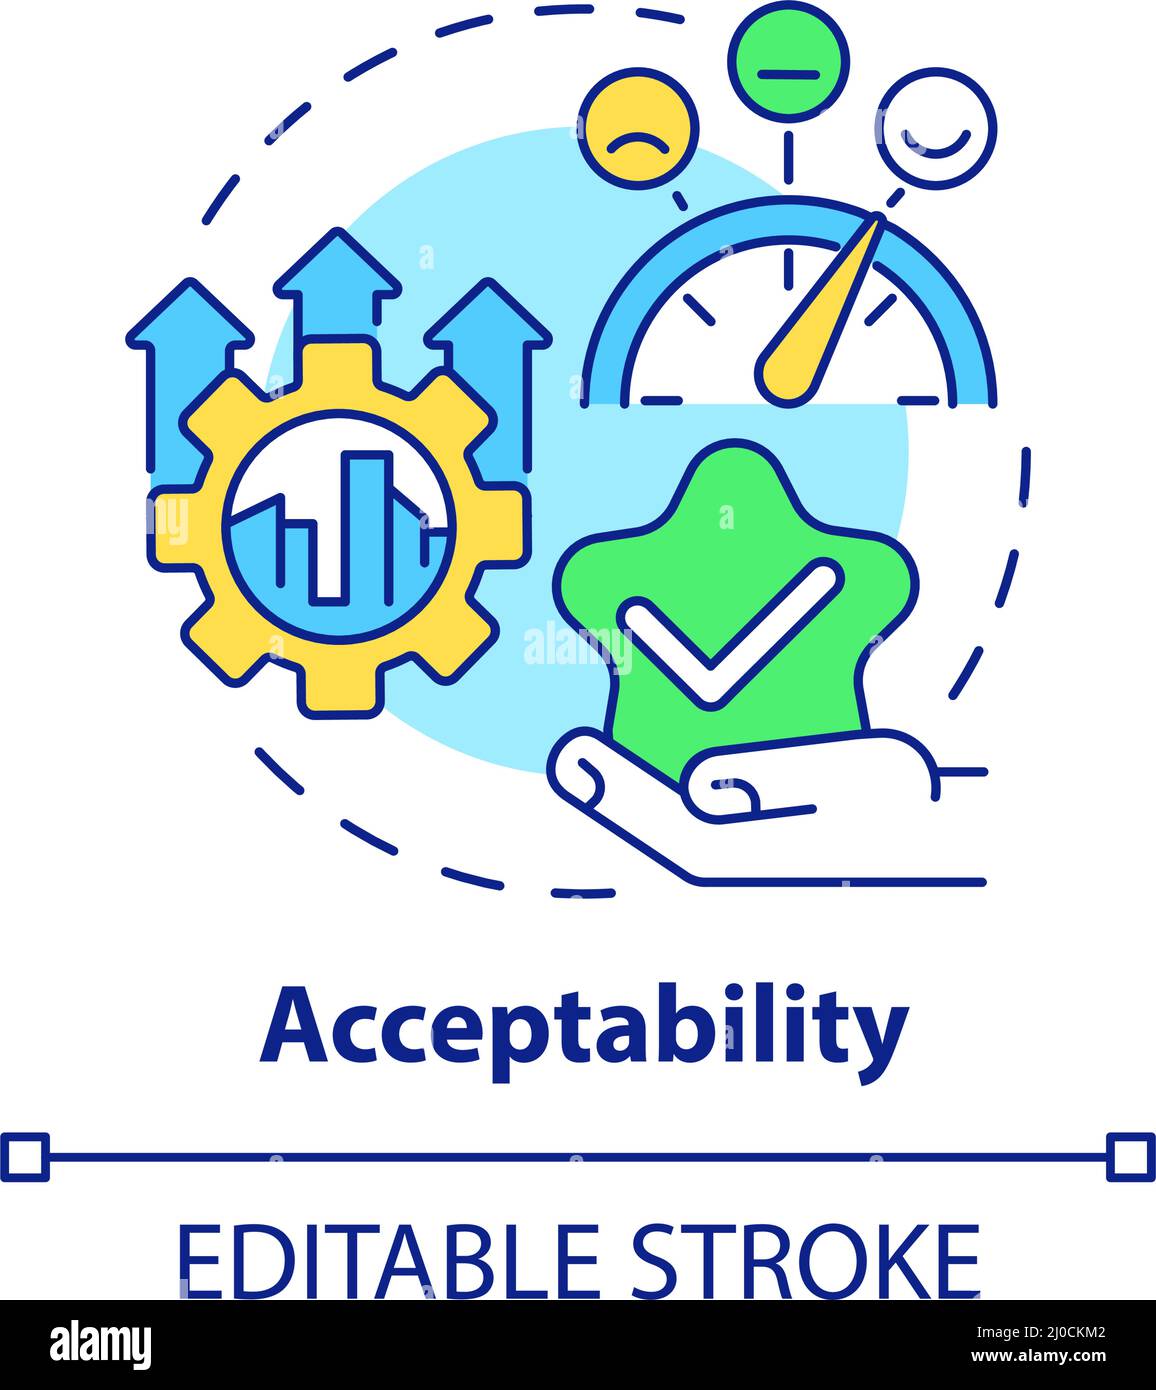 Acceptability concept icon Stock Vector